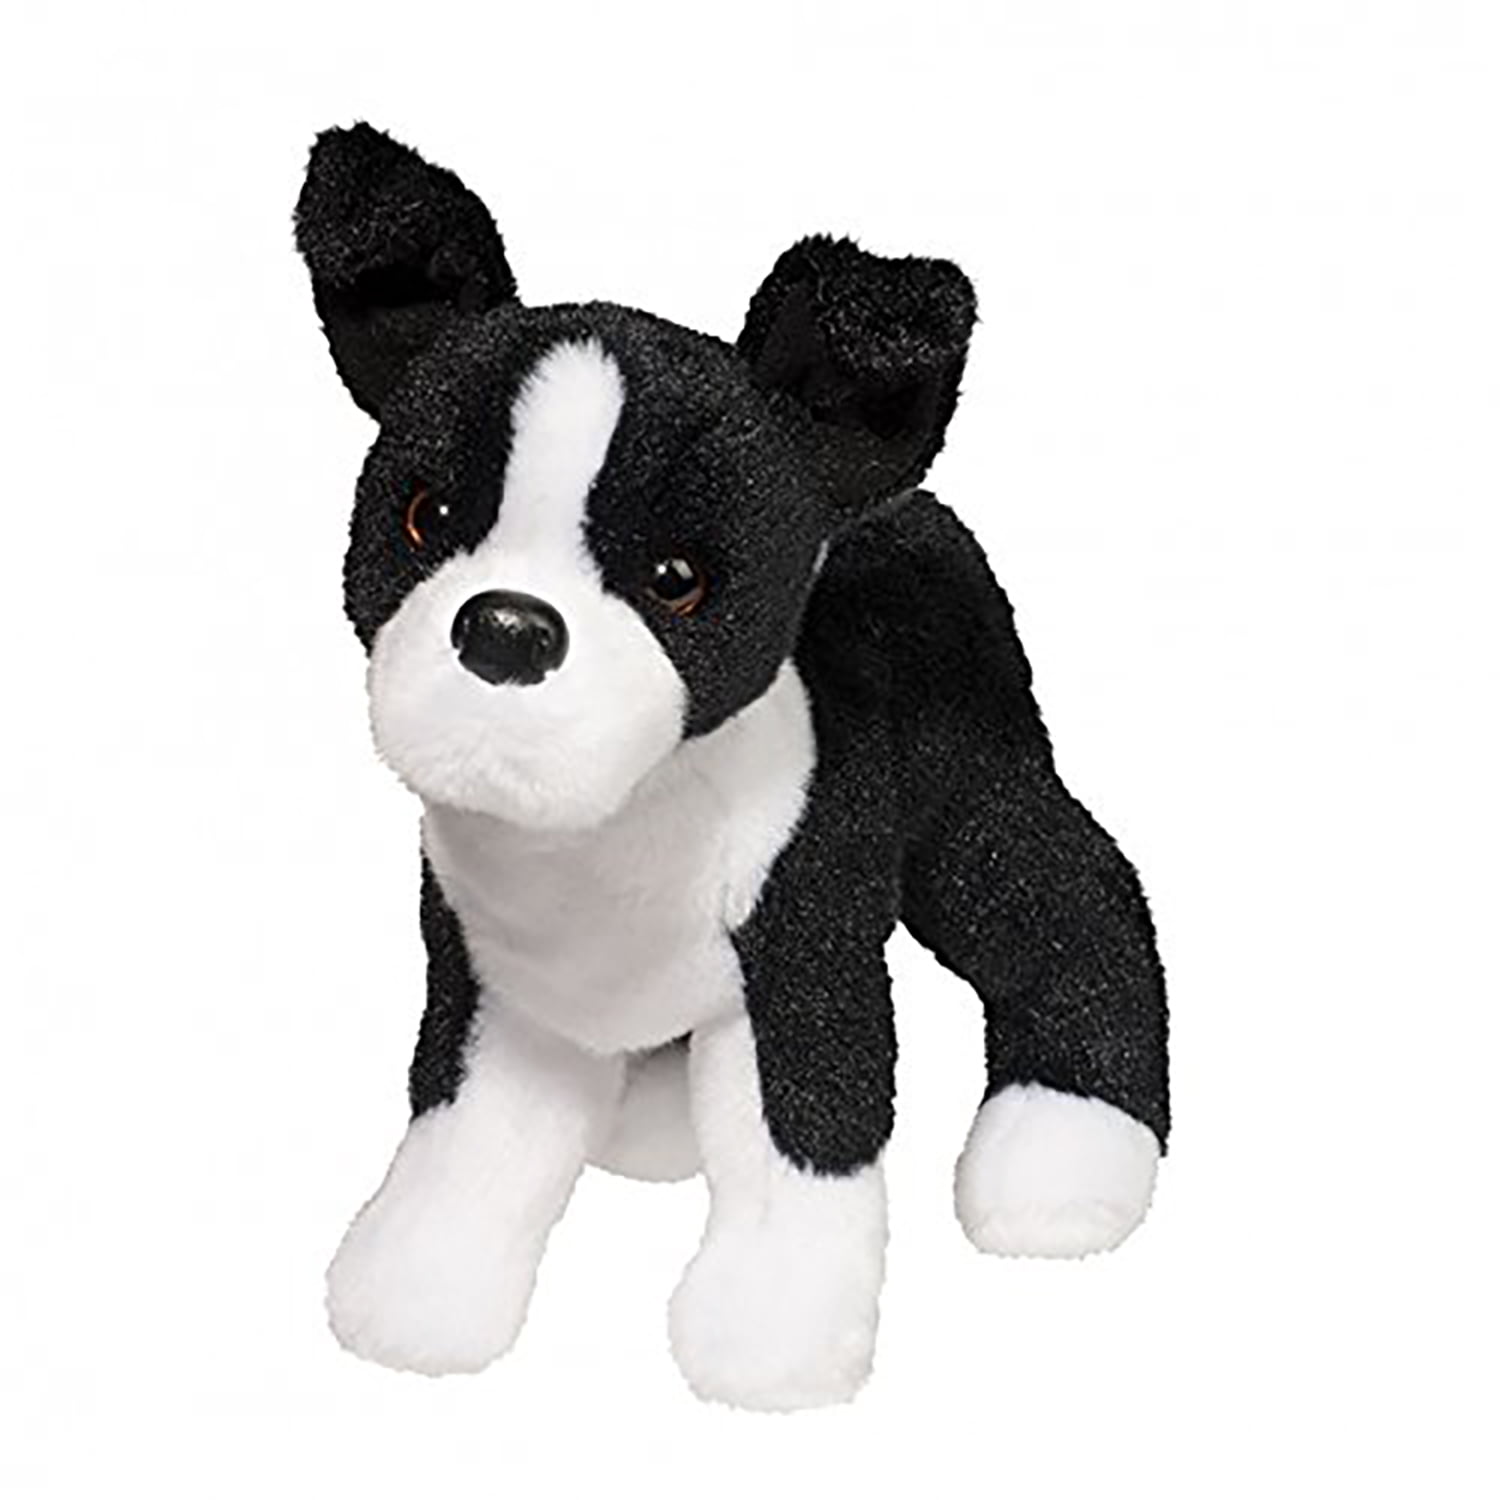 Aurora World Miyoni Boston Terrier Dog Plush Toy Black and White 9" High 